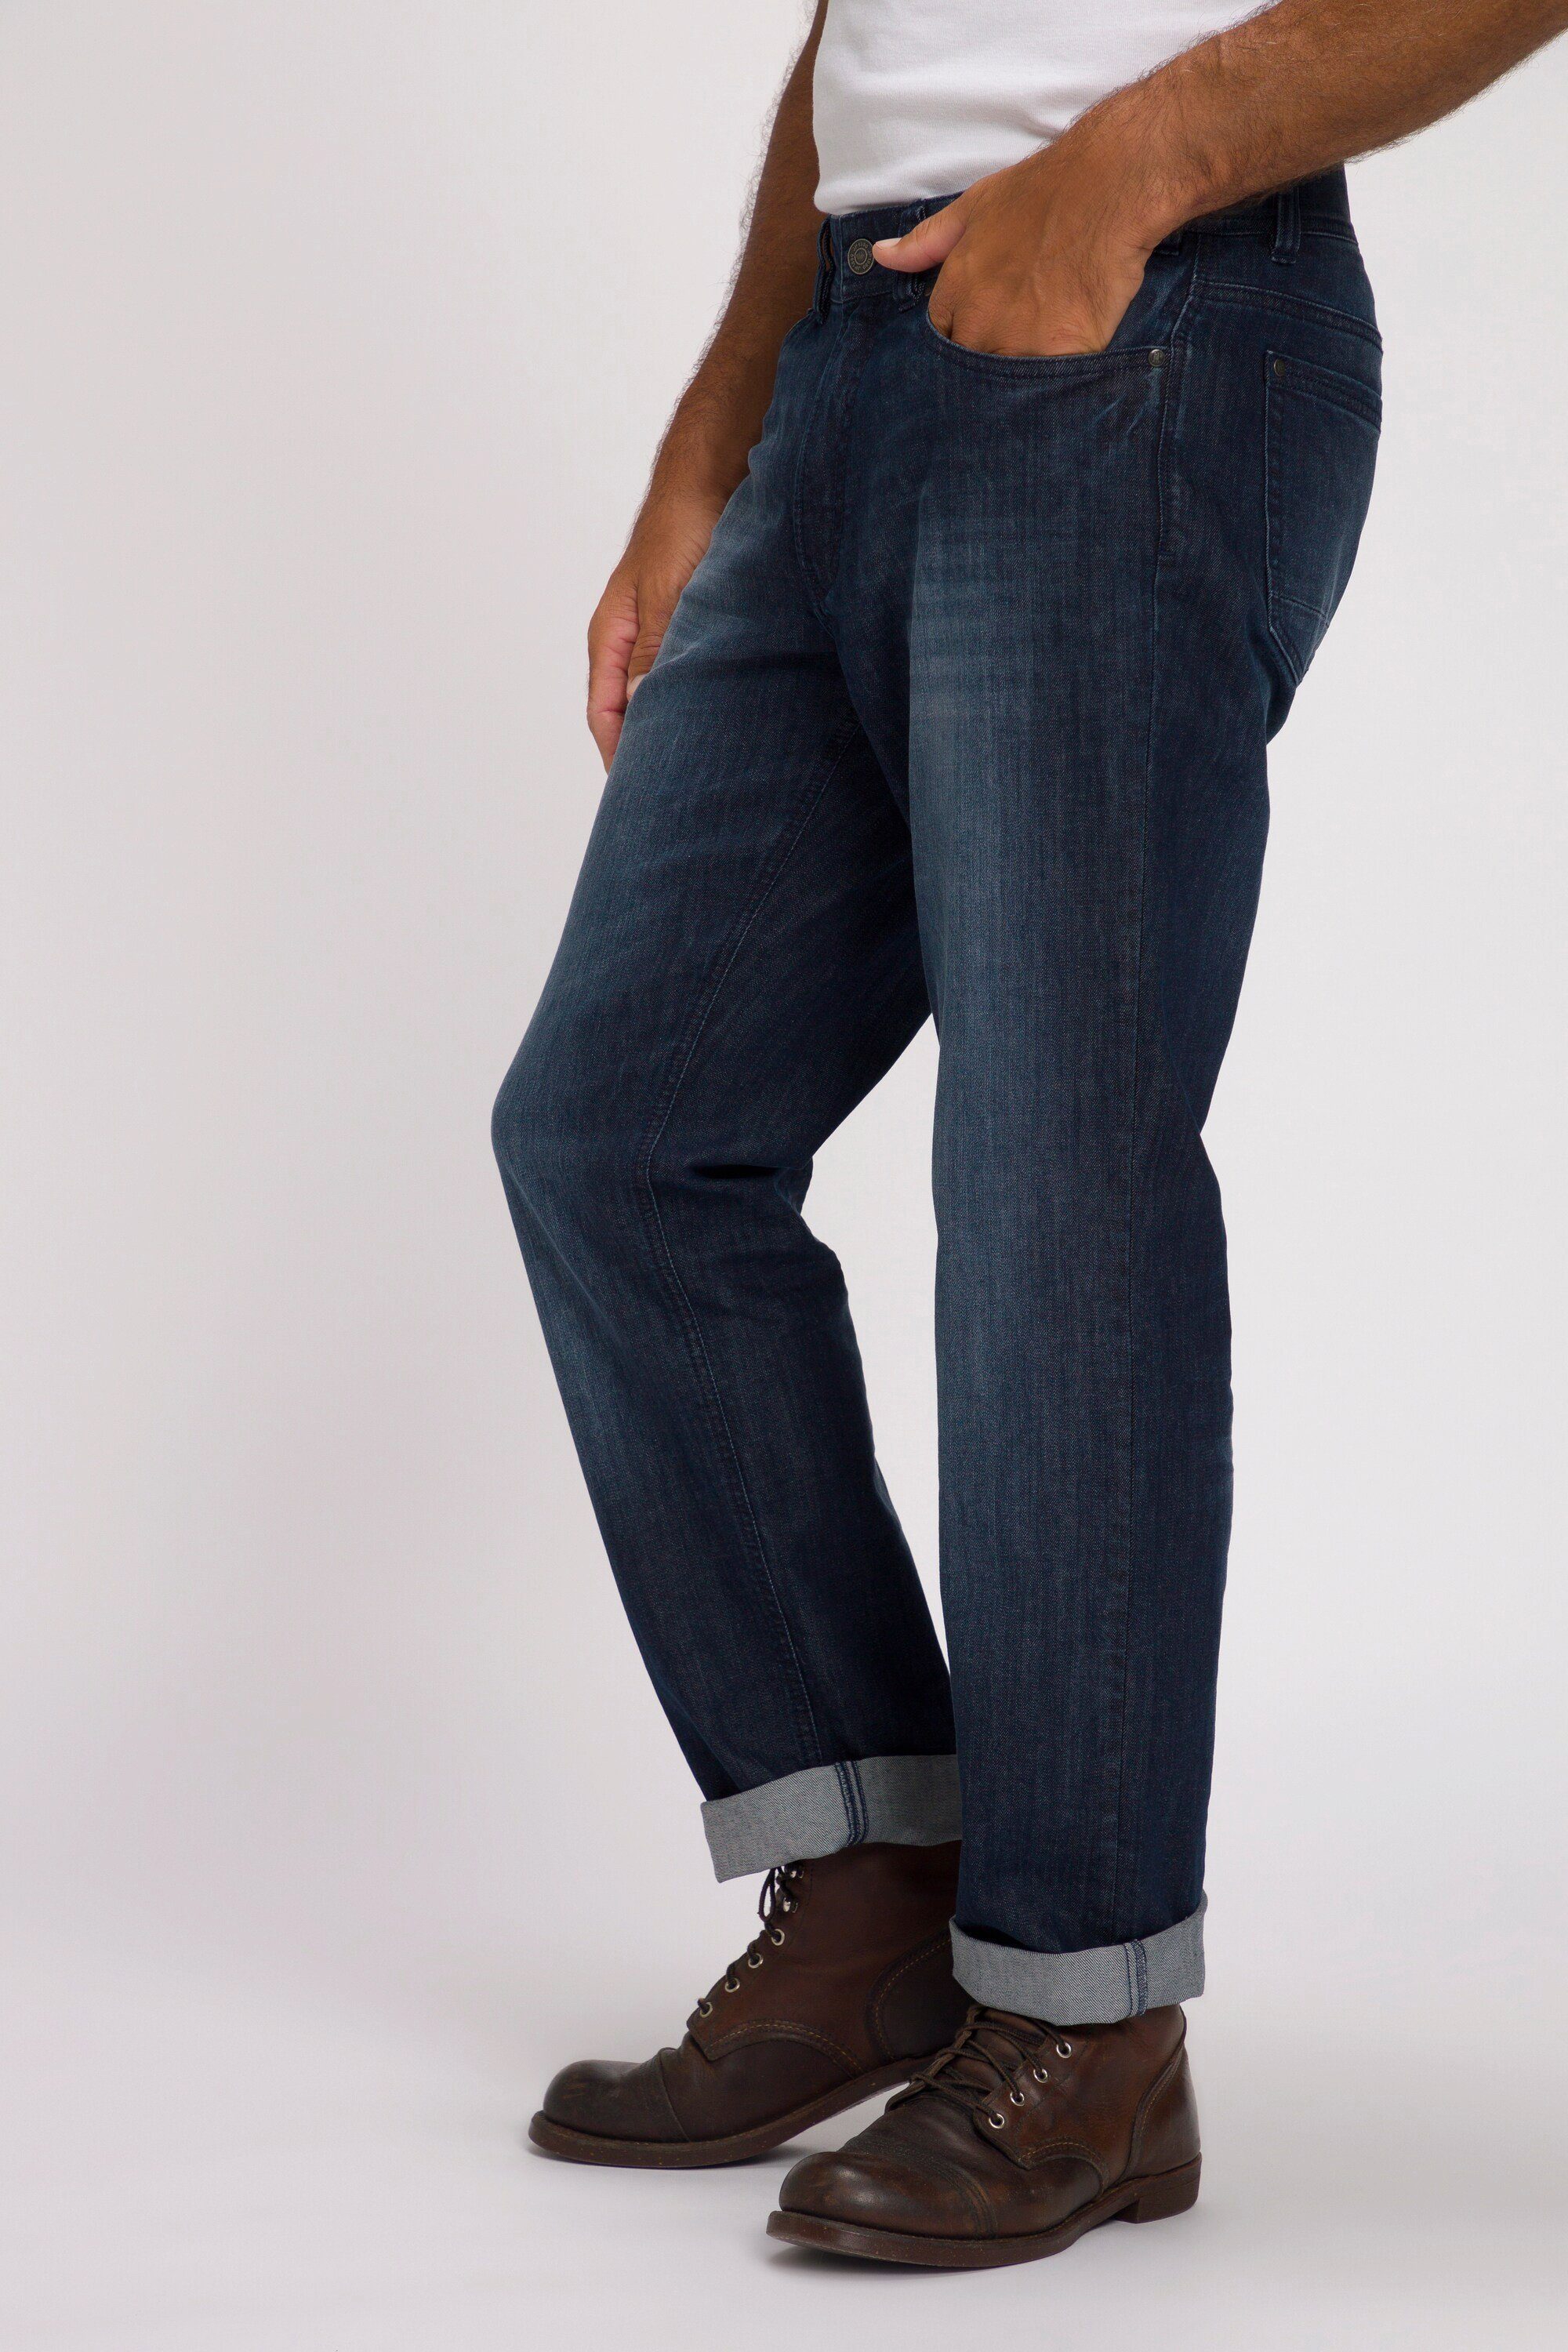 JP1880 dark Cargohose Denim Regular blue 5-Pocket Jeans denim Denim Fit